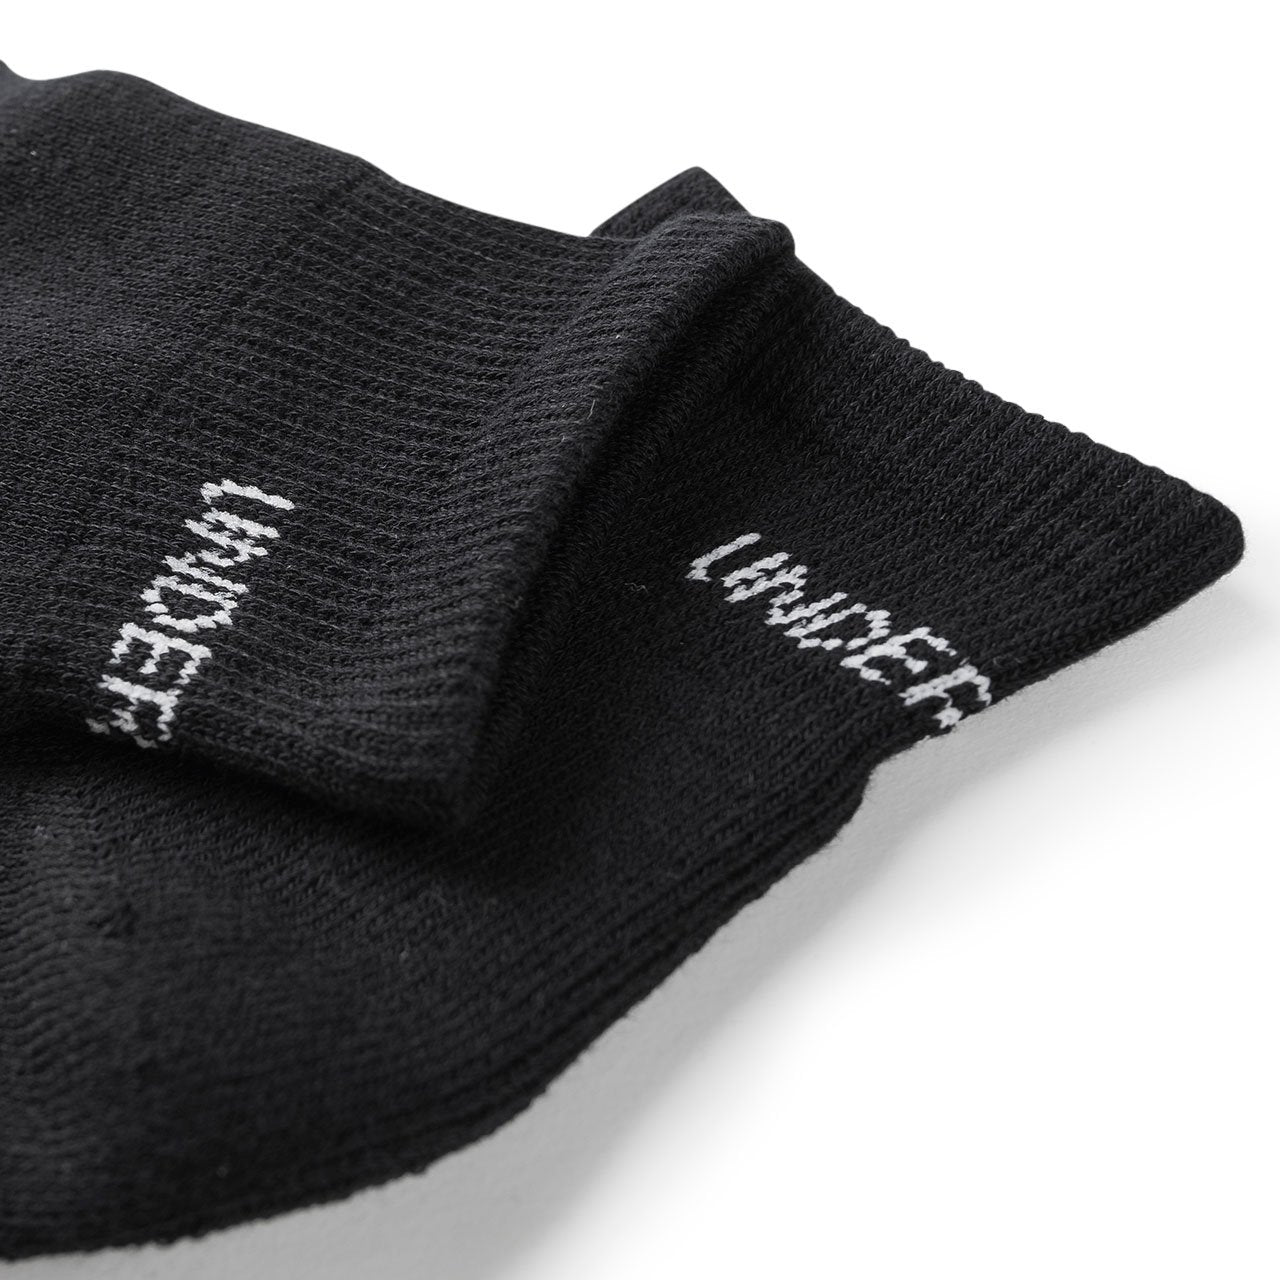 undercover undercover ucjq sneaker socks (black) UCZ4L05-black